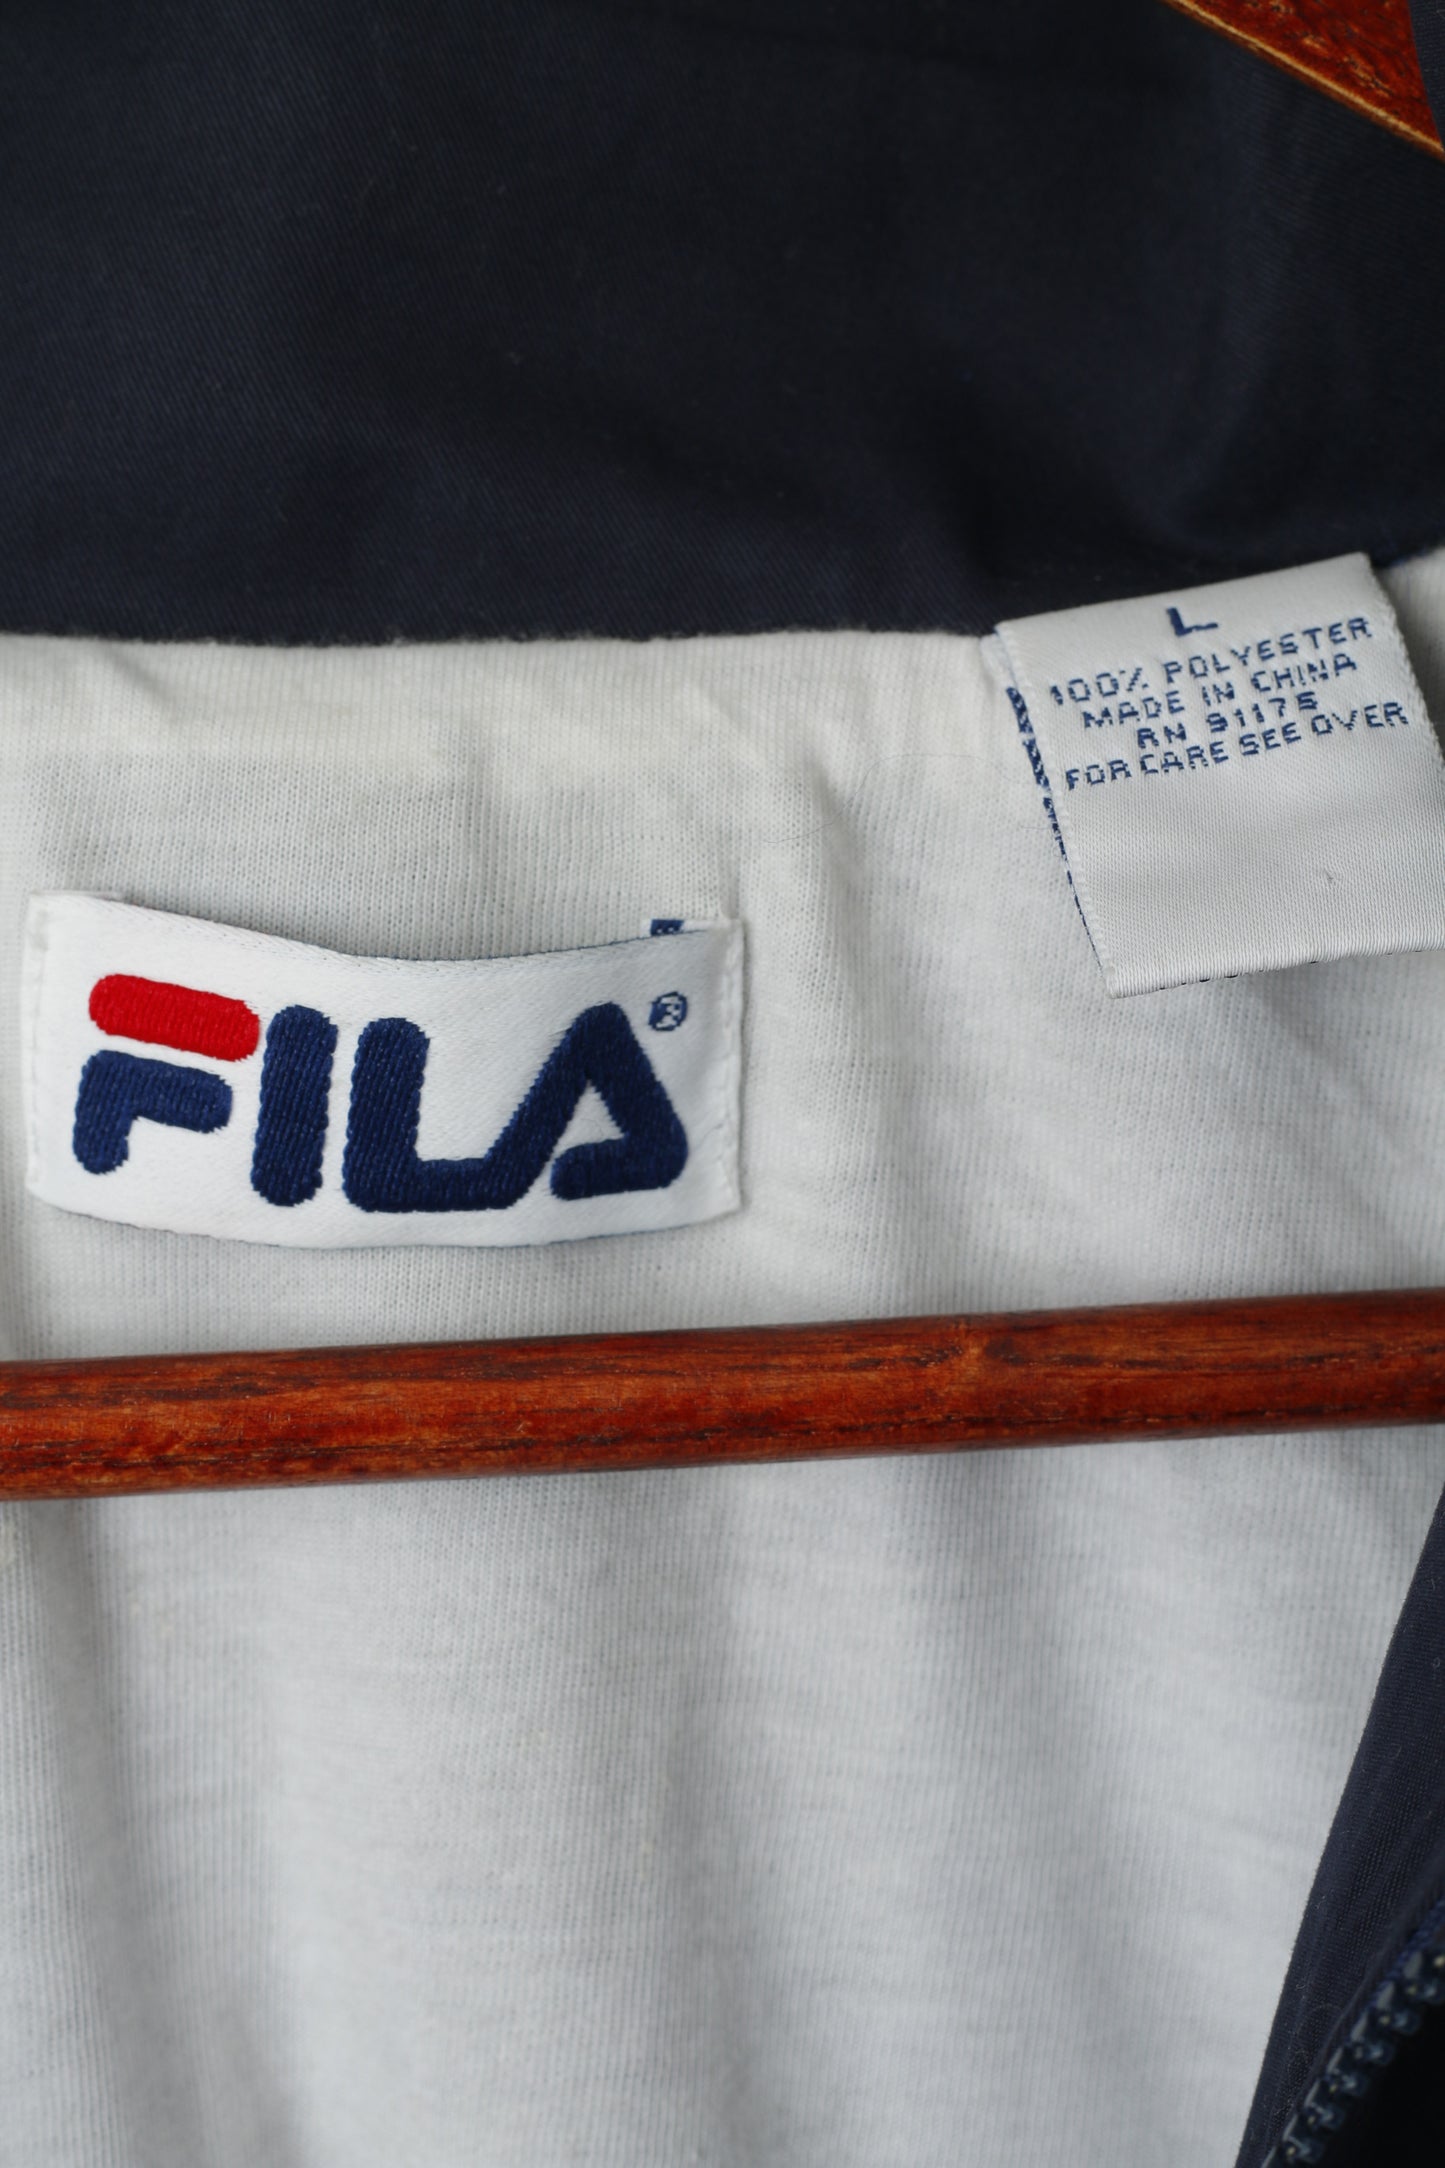 FILA Women L (M) Jacket Vintage Navy Full Zipper Waistband Retro Lightweight Top